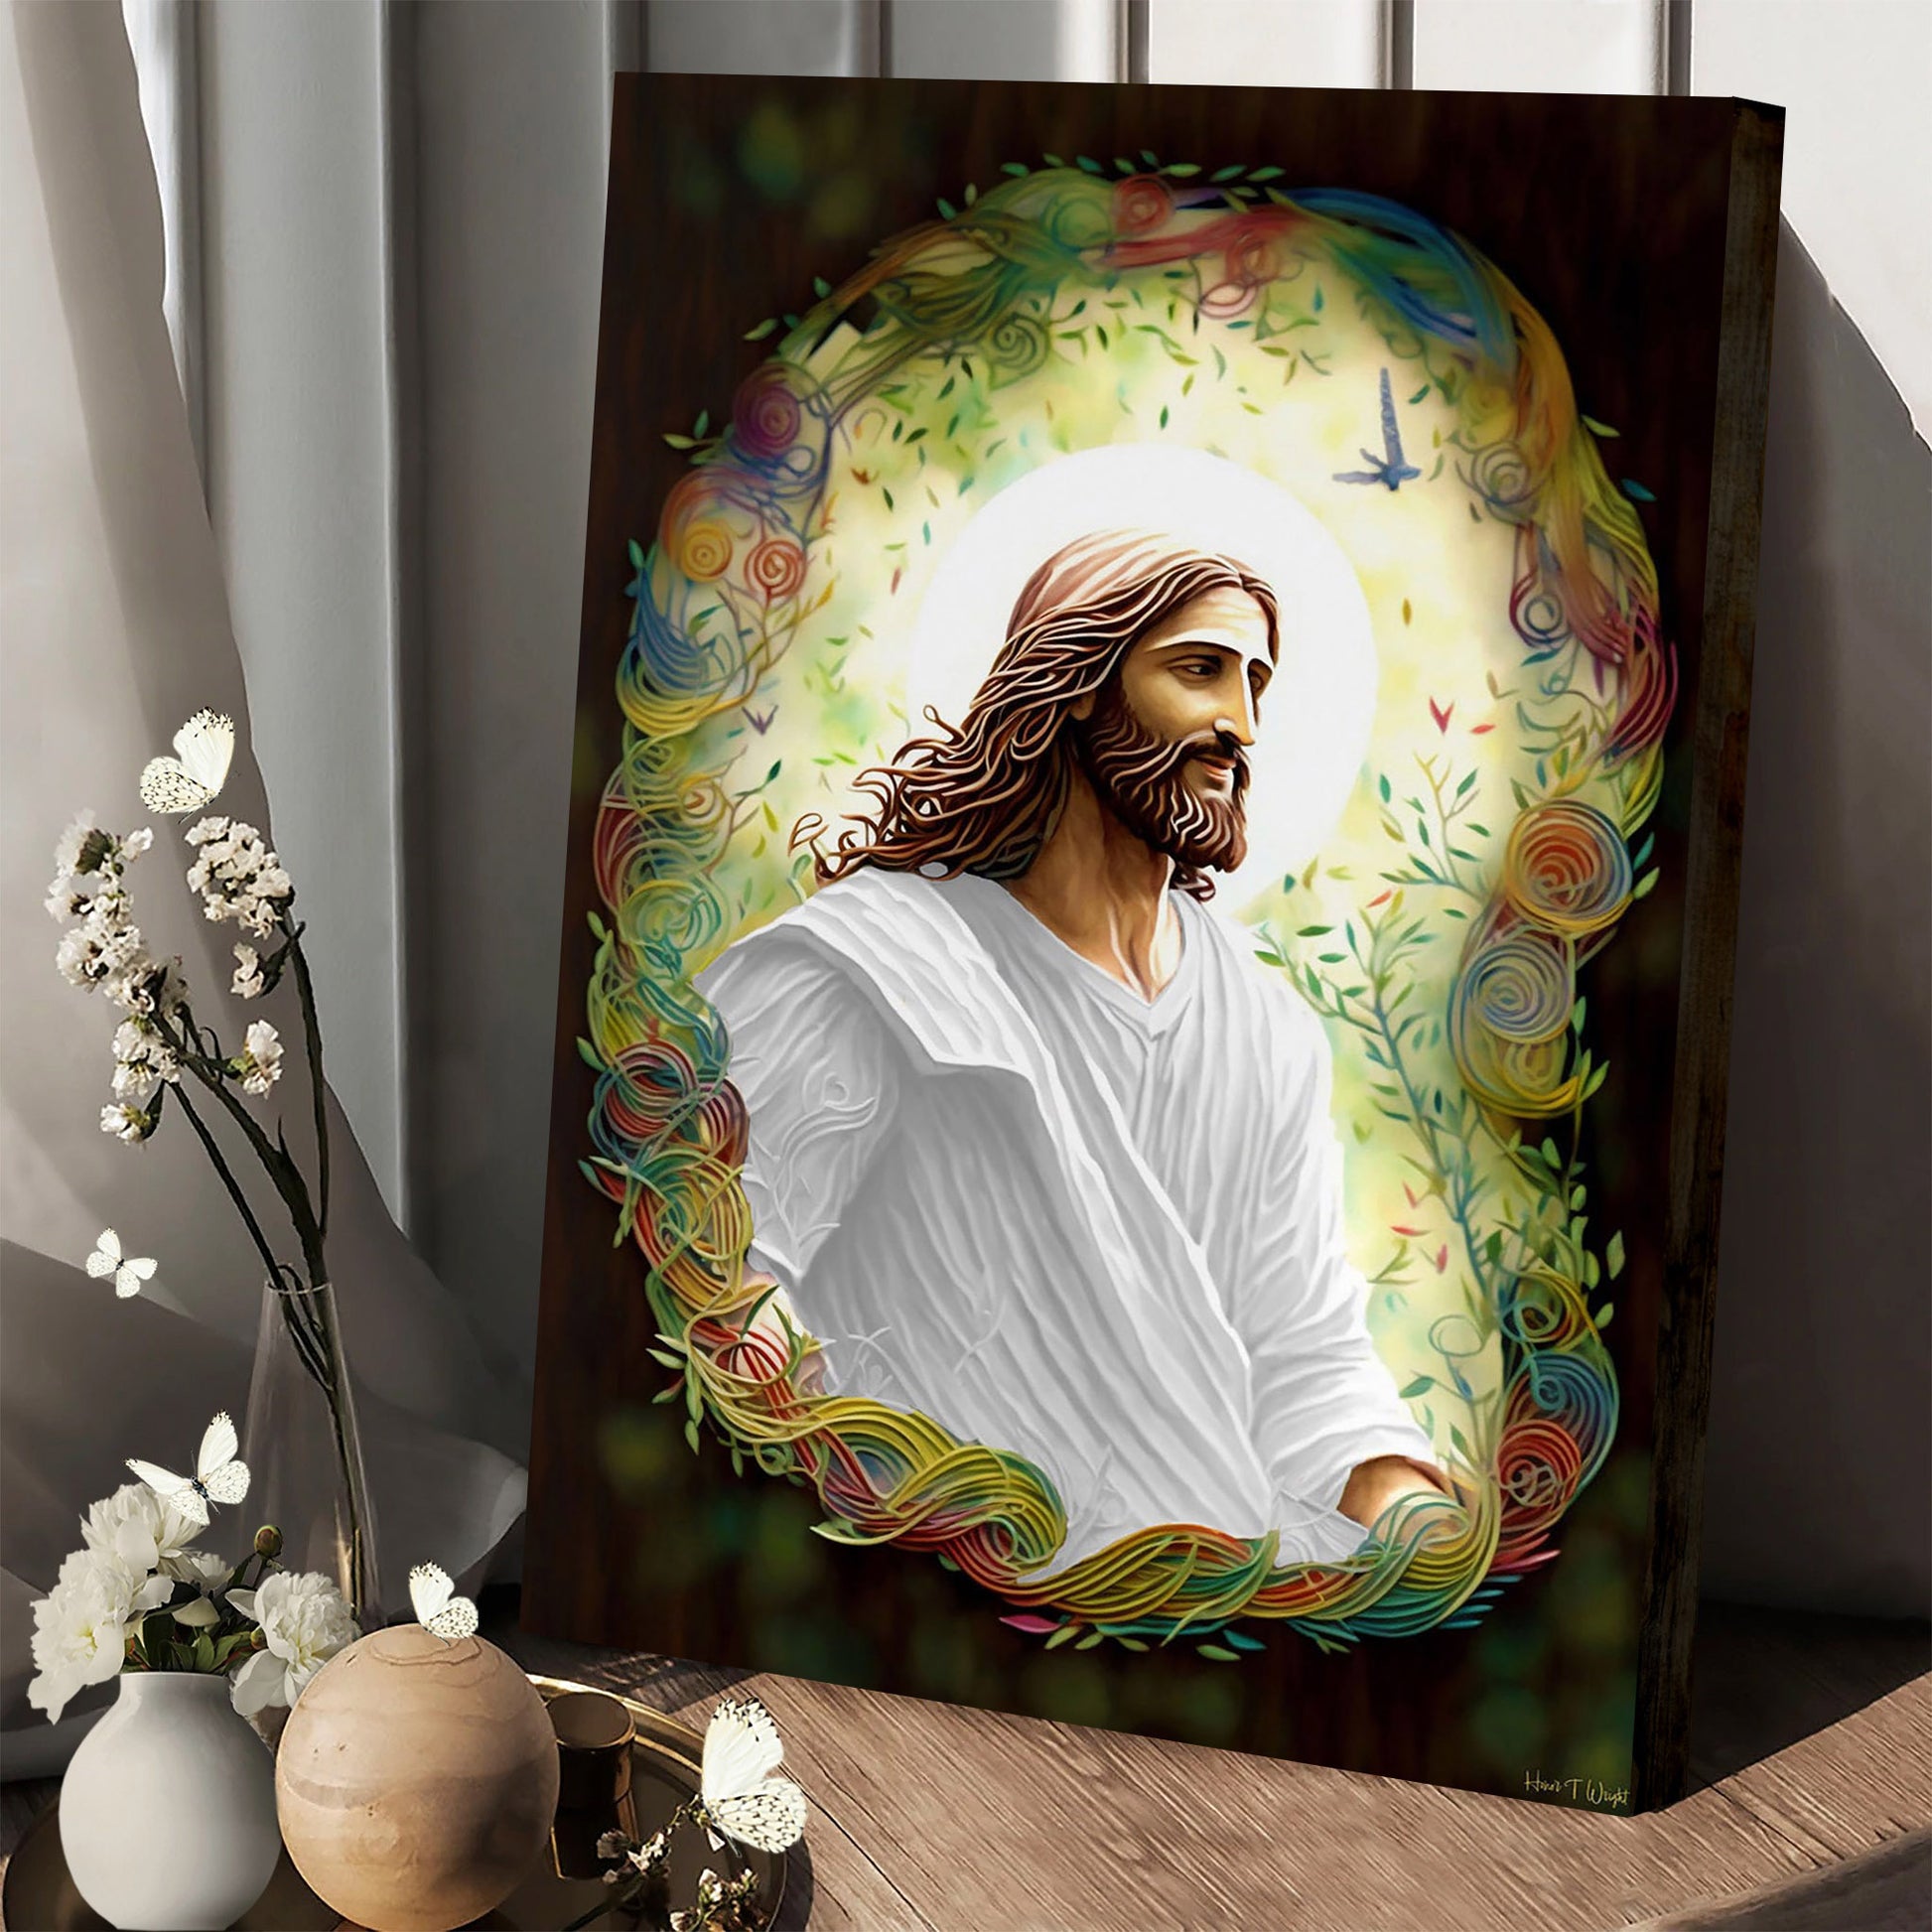 The Tender Teacher Loving Jesus Christ Kids Room Decor - Jesus Canvas Art - Christian Wall Art